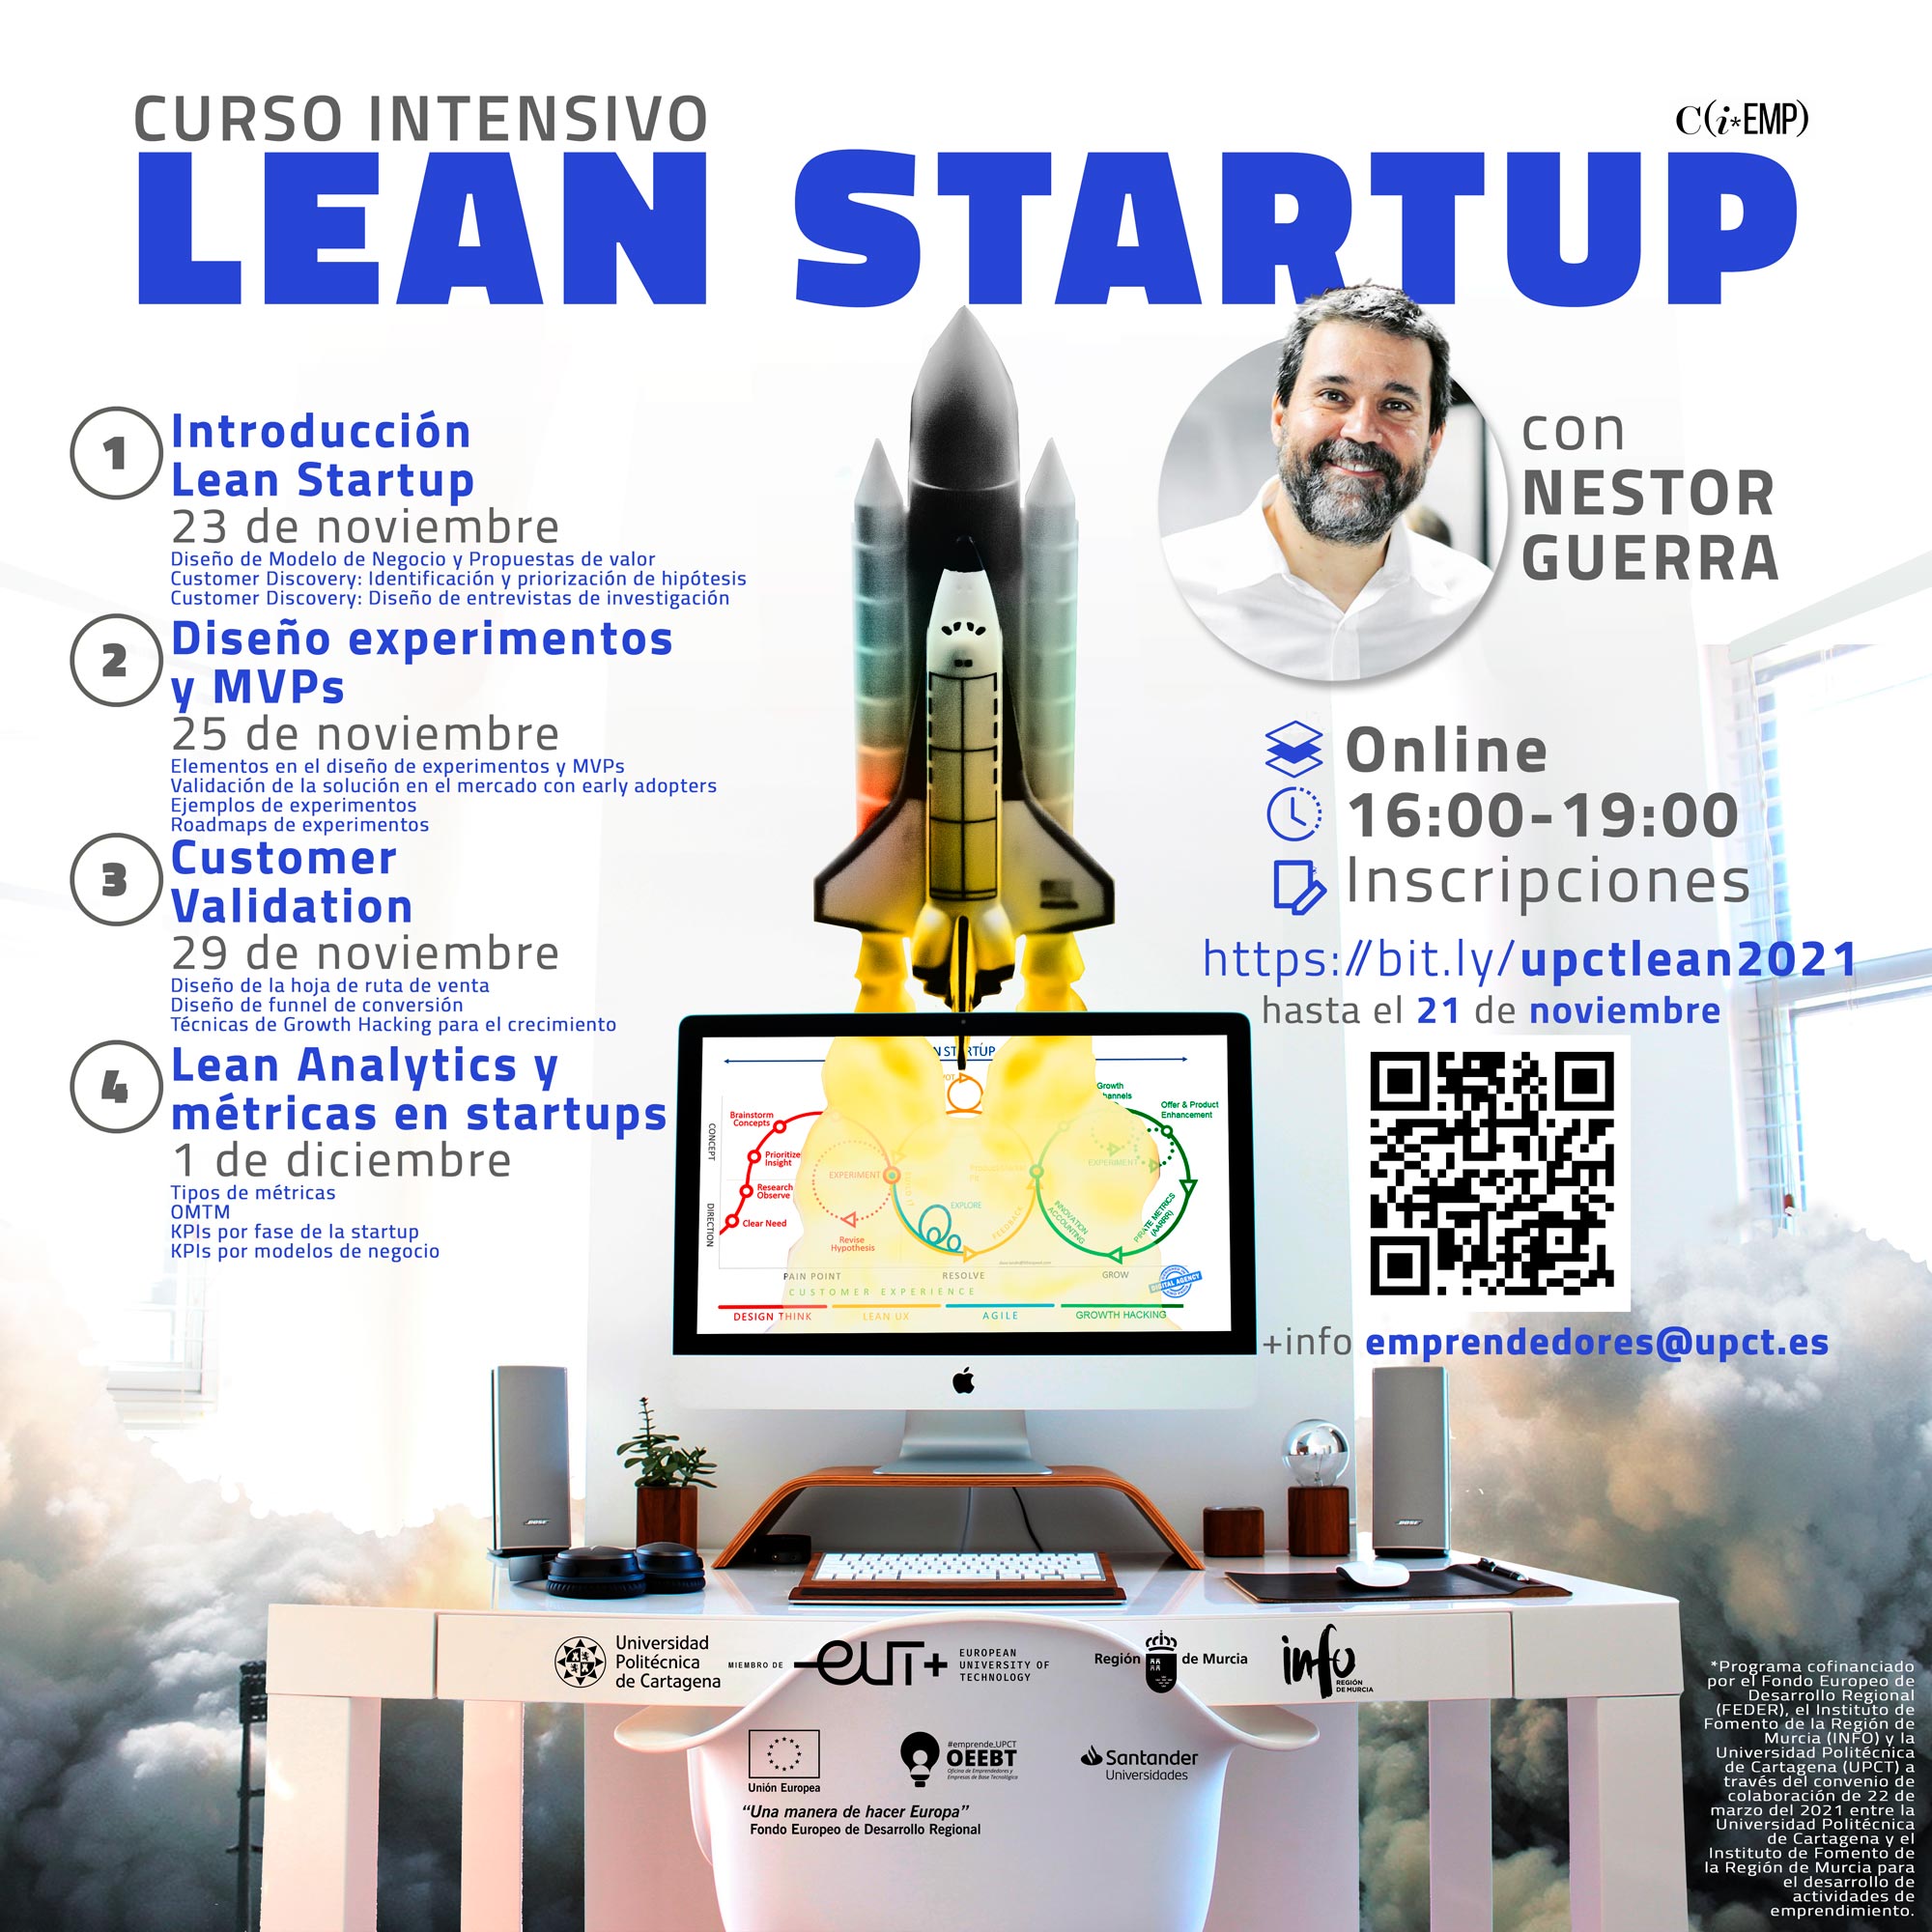 Inscríbete en el curso intensivo de Lean Startup